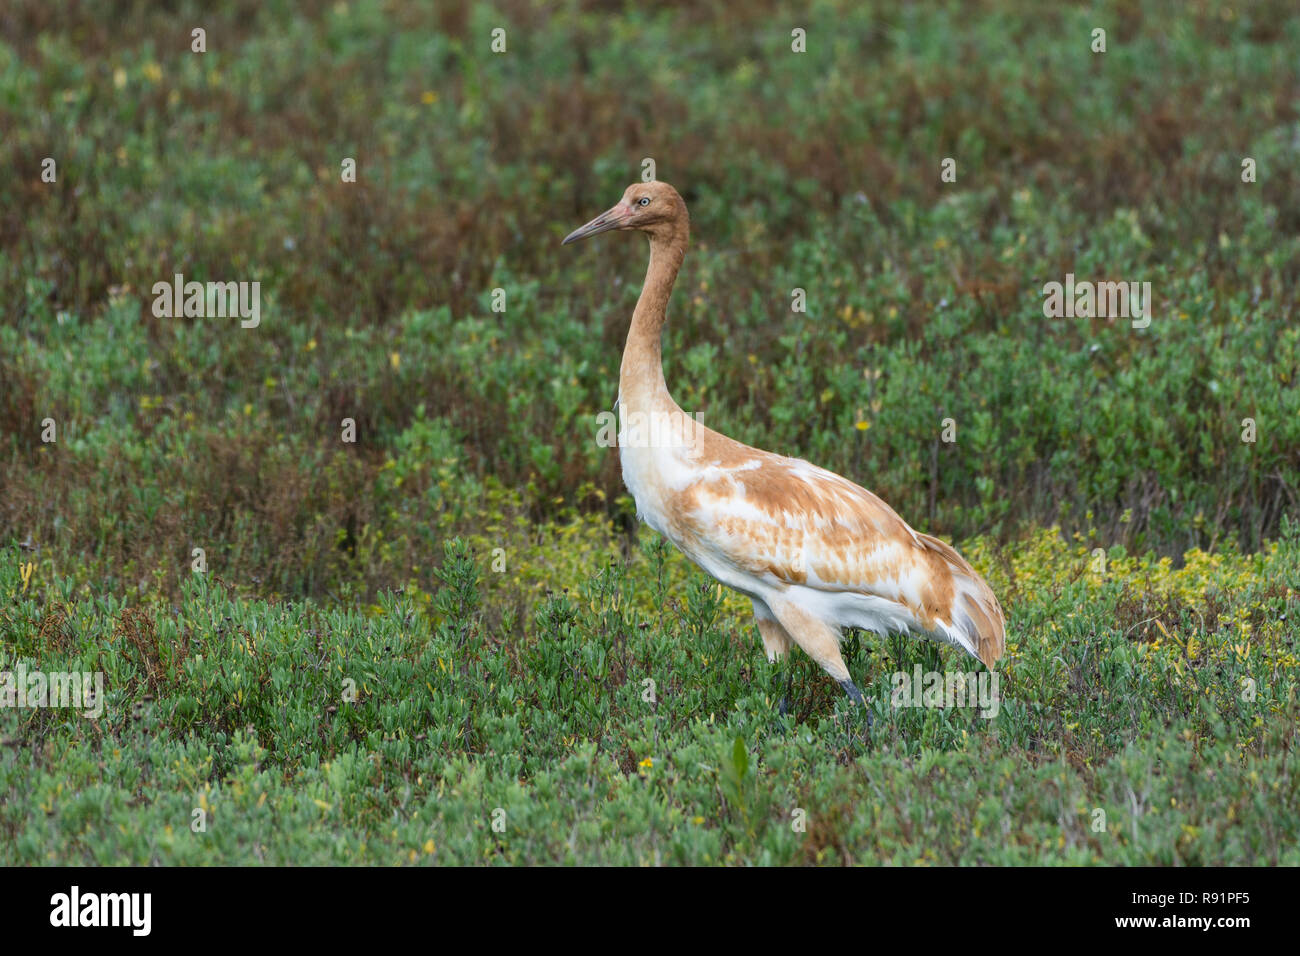 Ein jugendlicher Whooping Crane (Grus americana) Nahrungssuche im Winter Lebensraum. Aransas National Wildlife Refuge, Texas, USA. Stockfoto